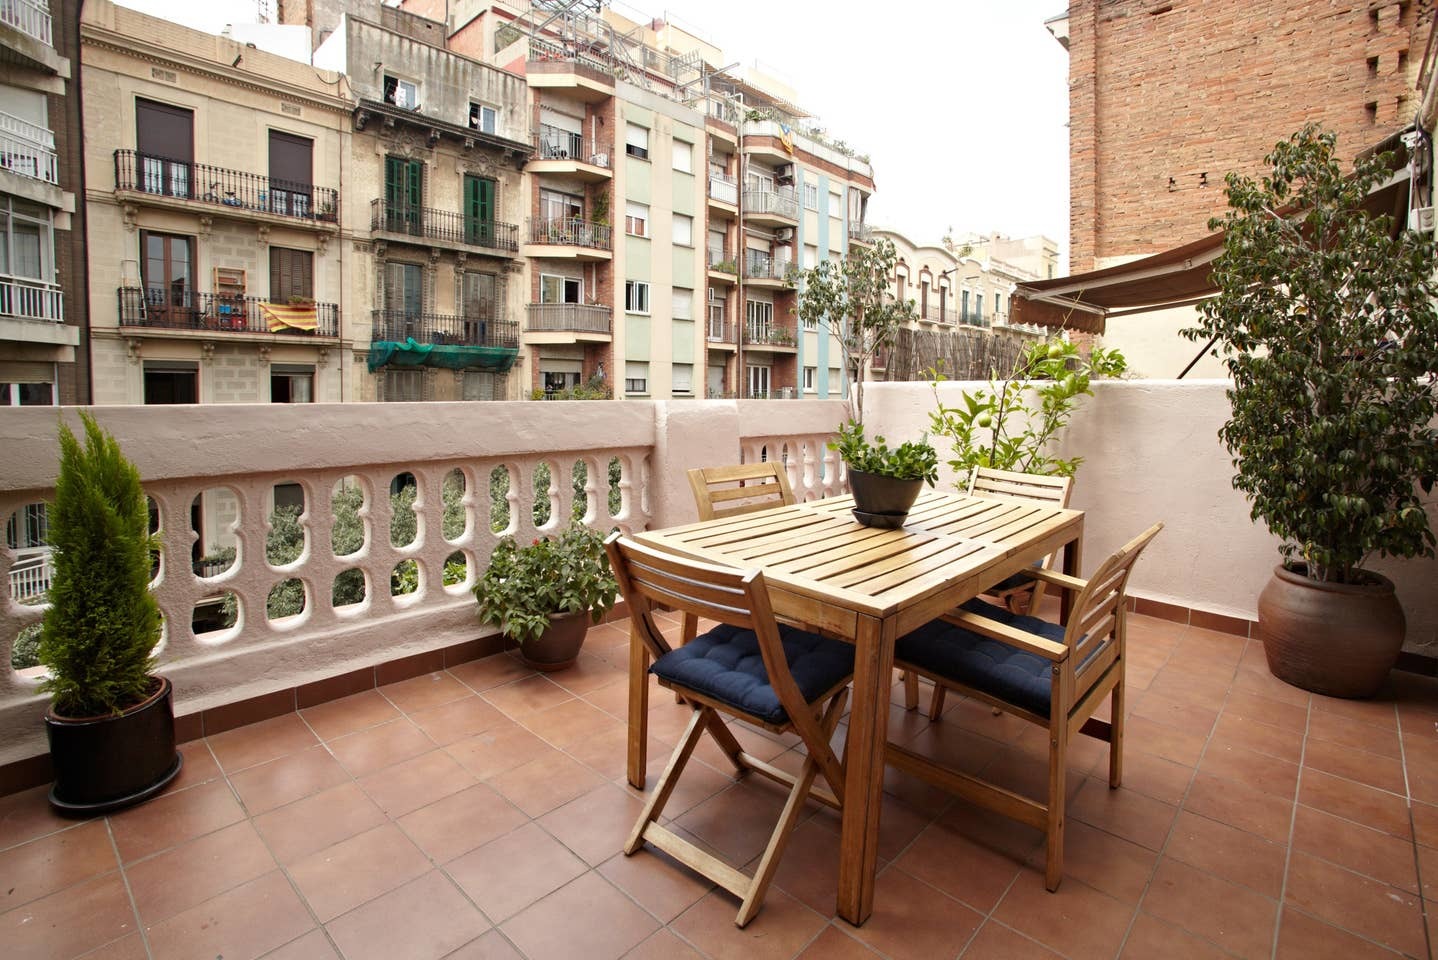 продаётся квартира с туристической лицензией в Барселоне